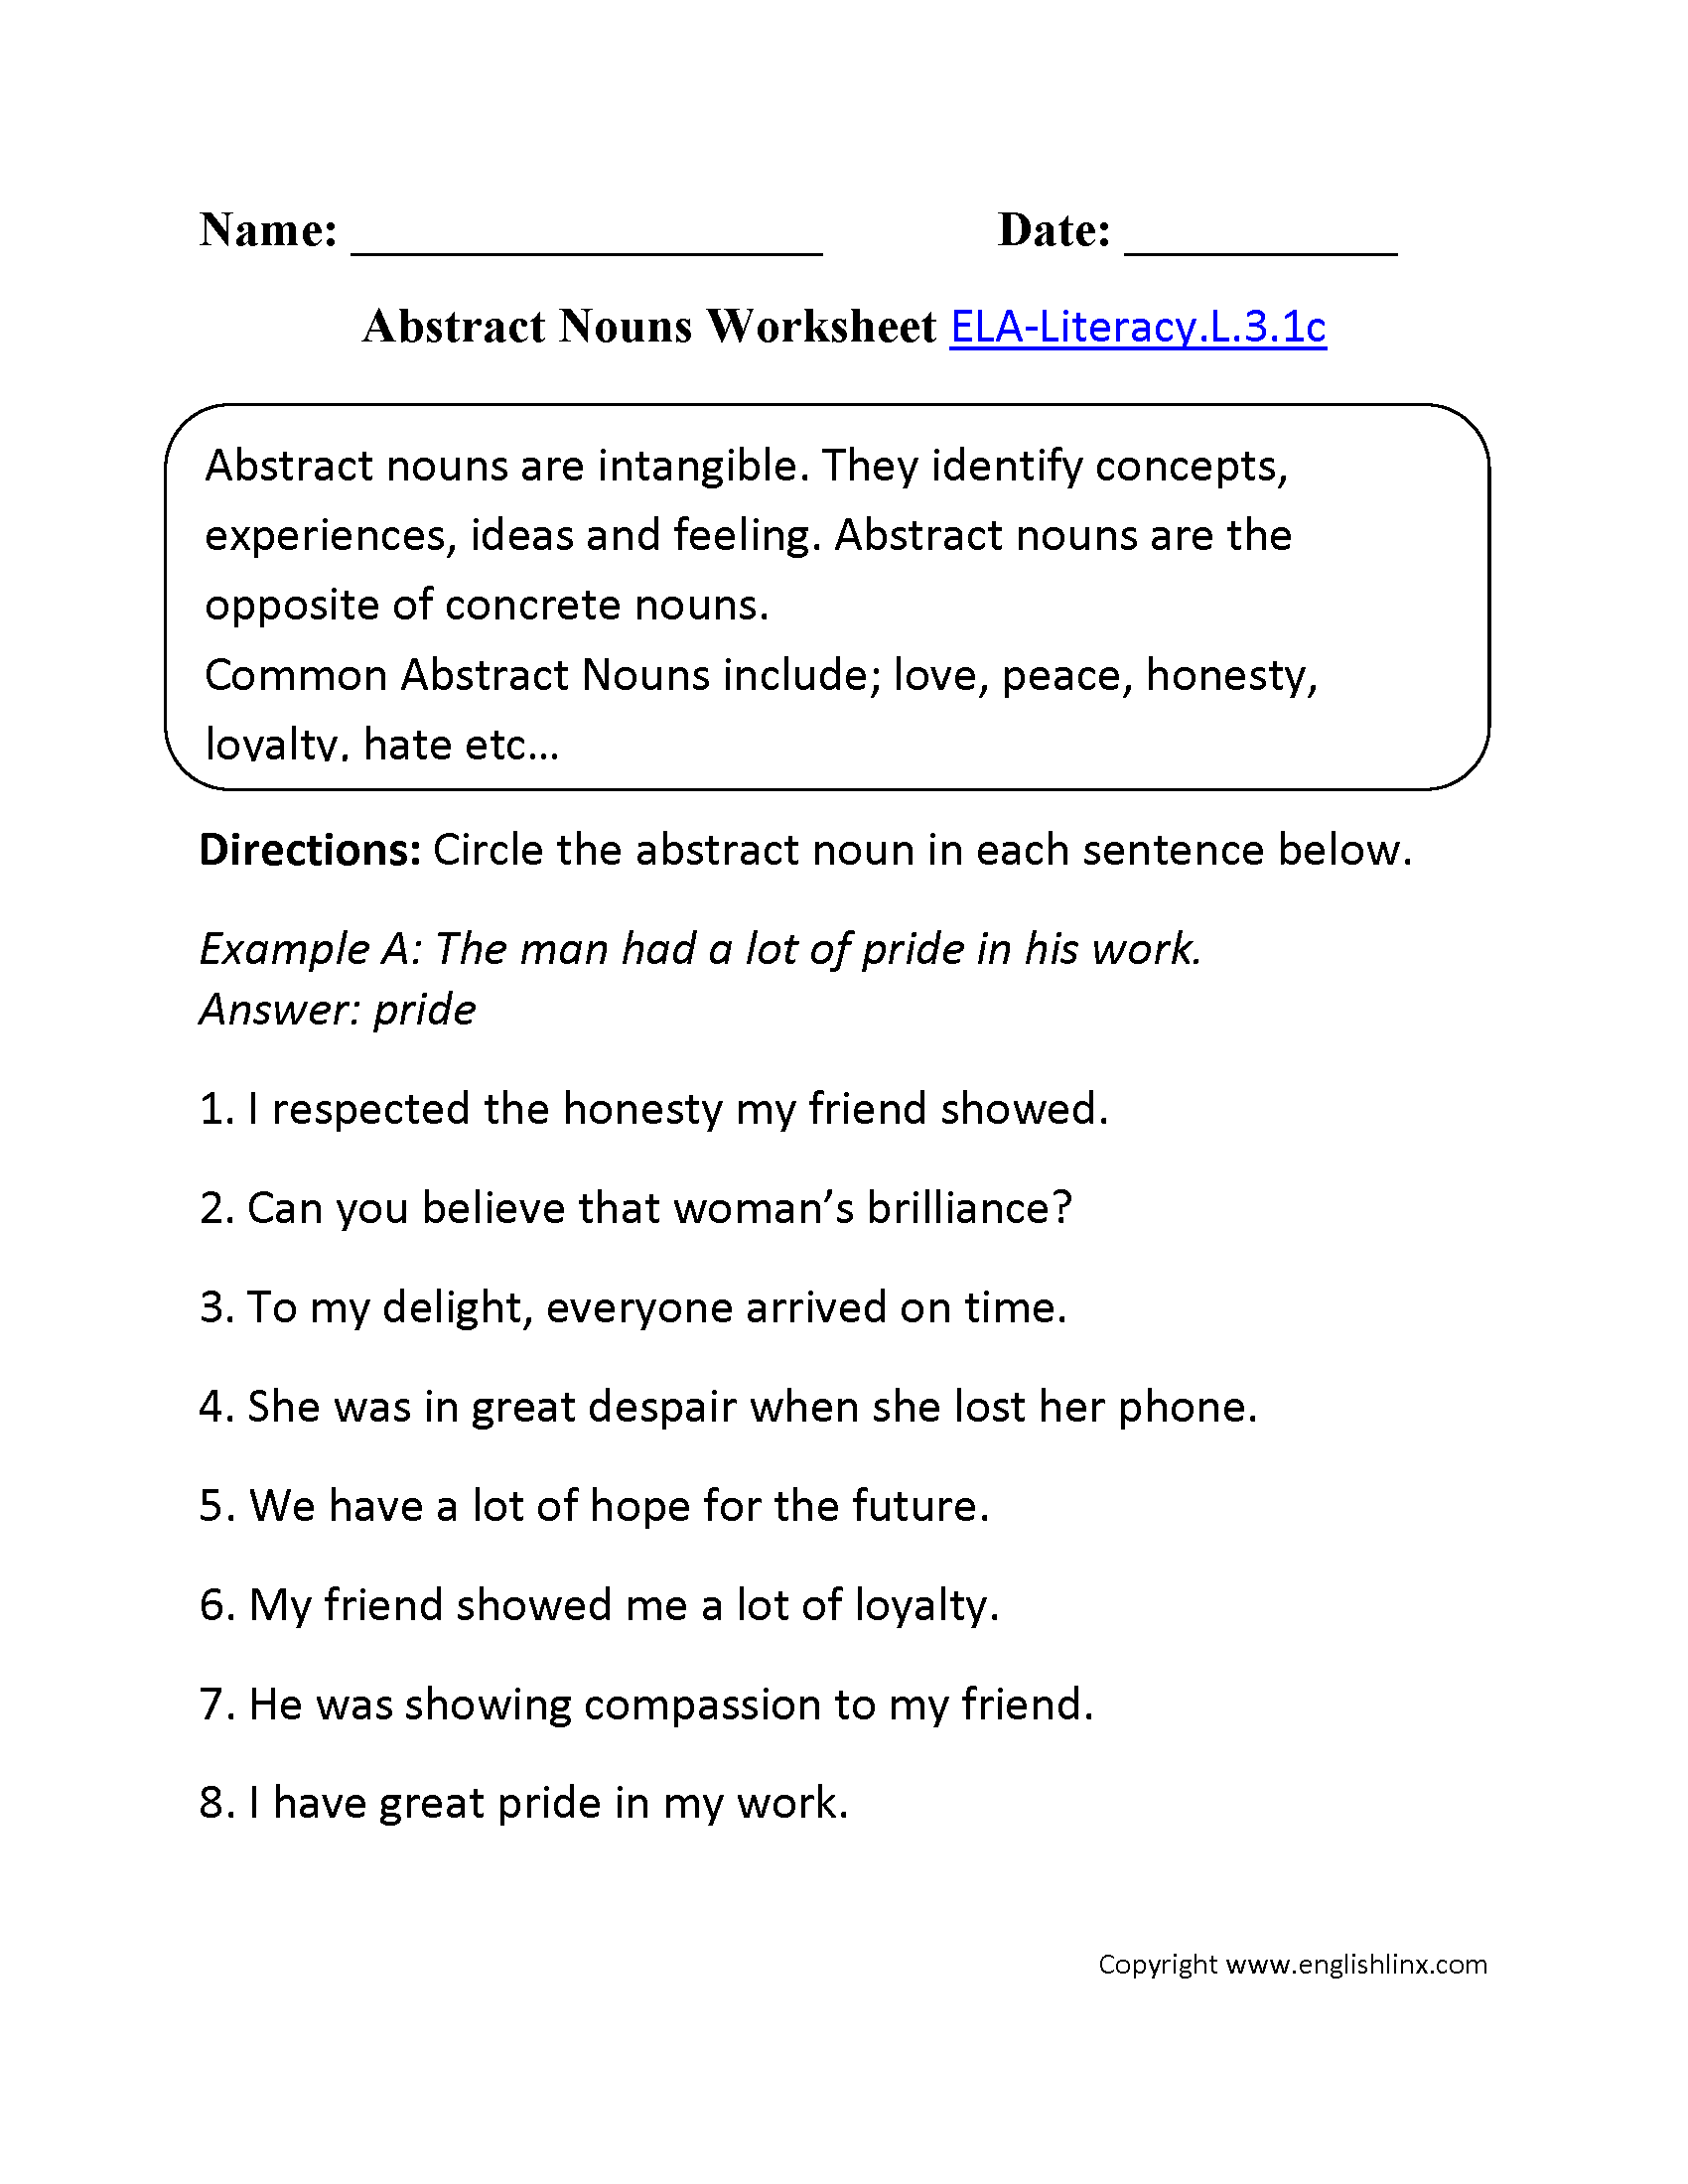 Abstract Nouns Worksheet 1 ELA-Literacy.L.3.1c Language Worksheet